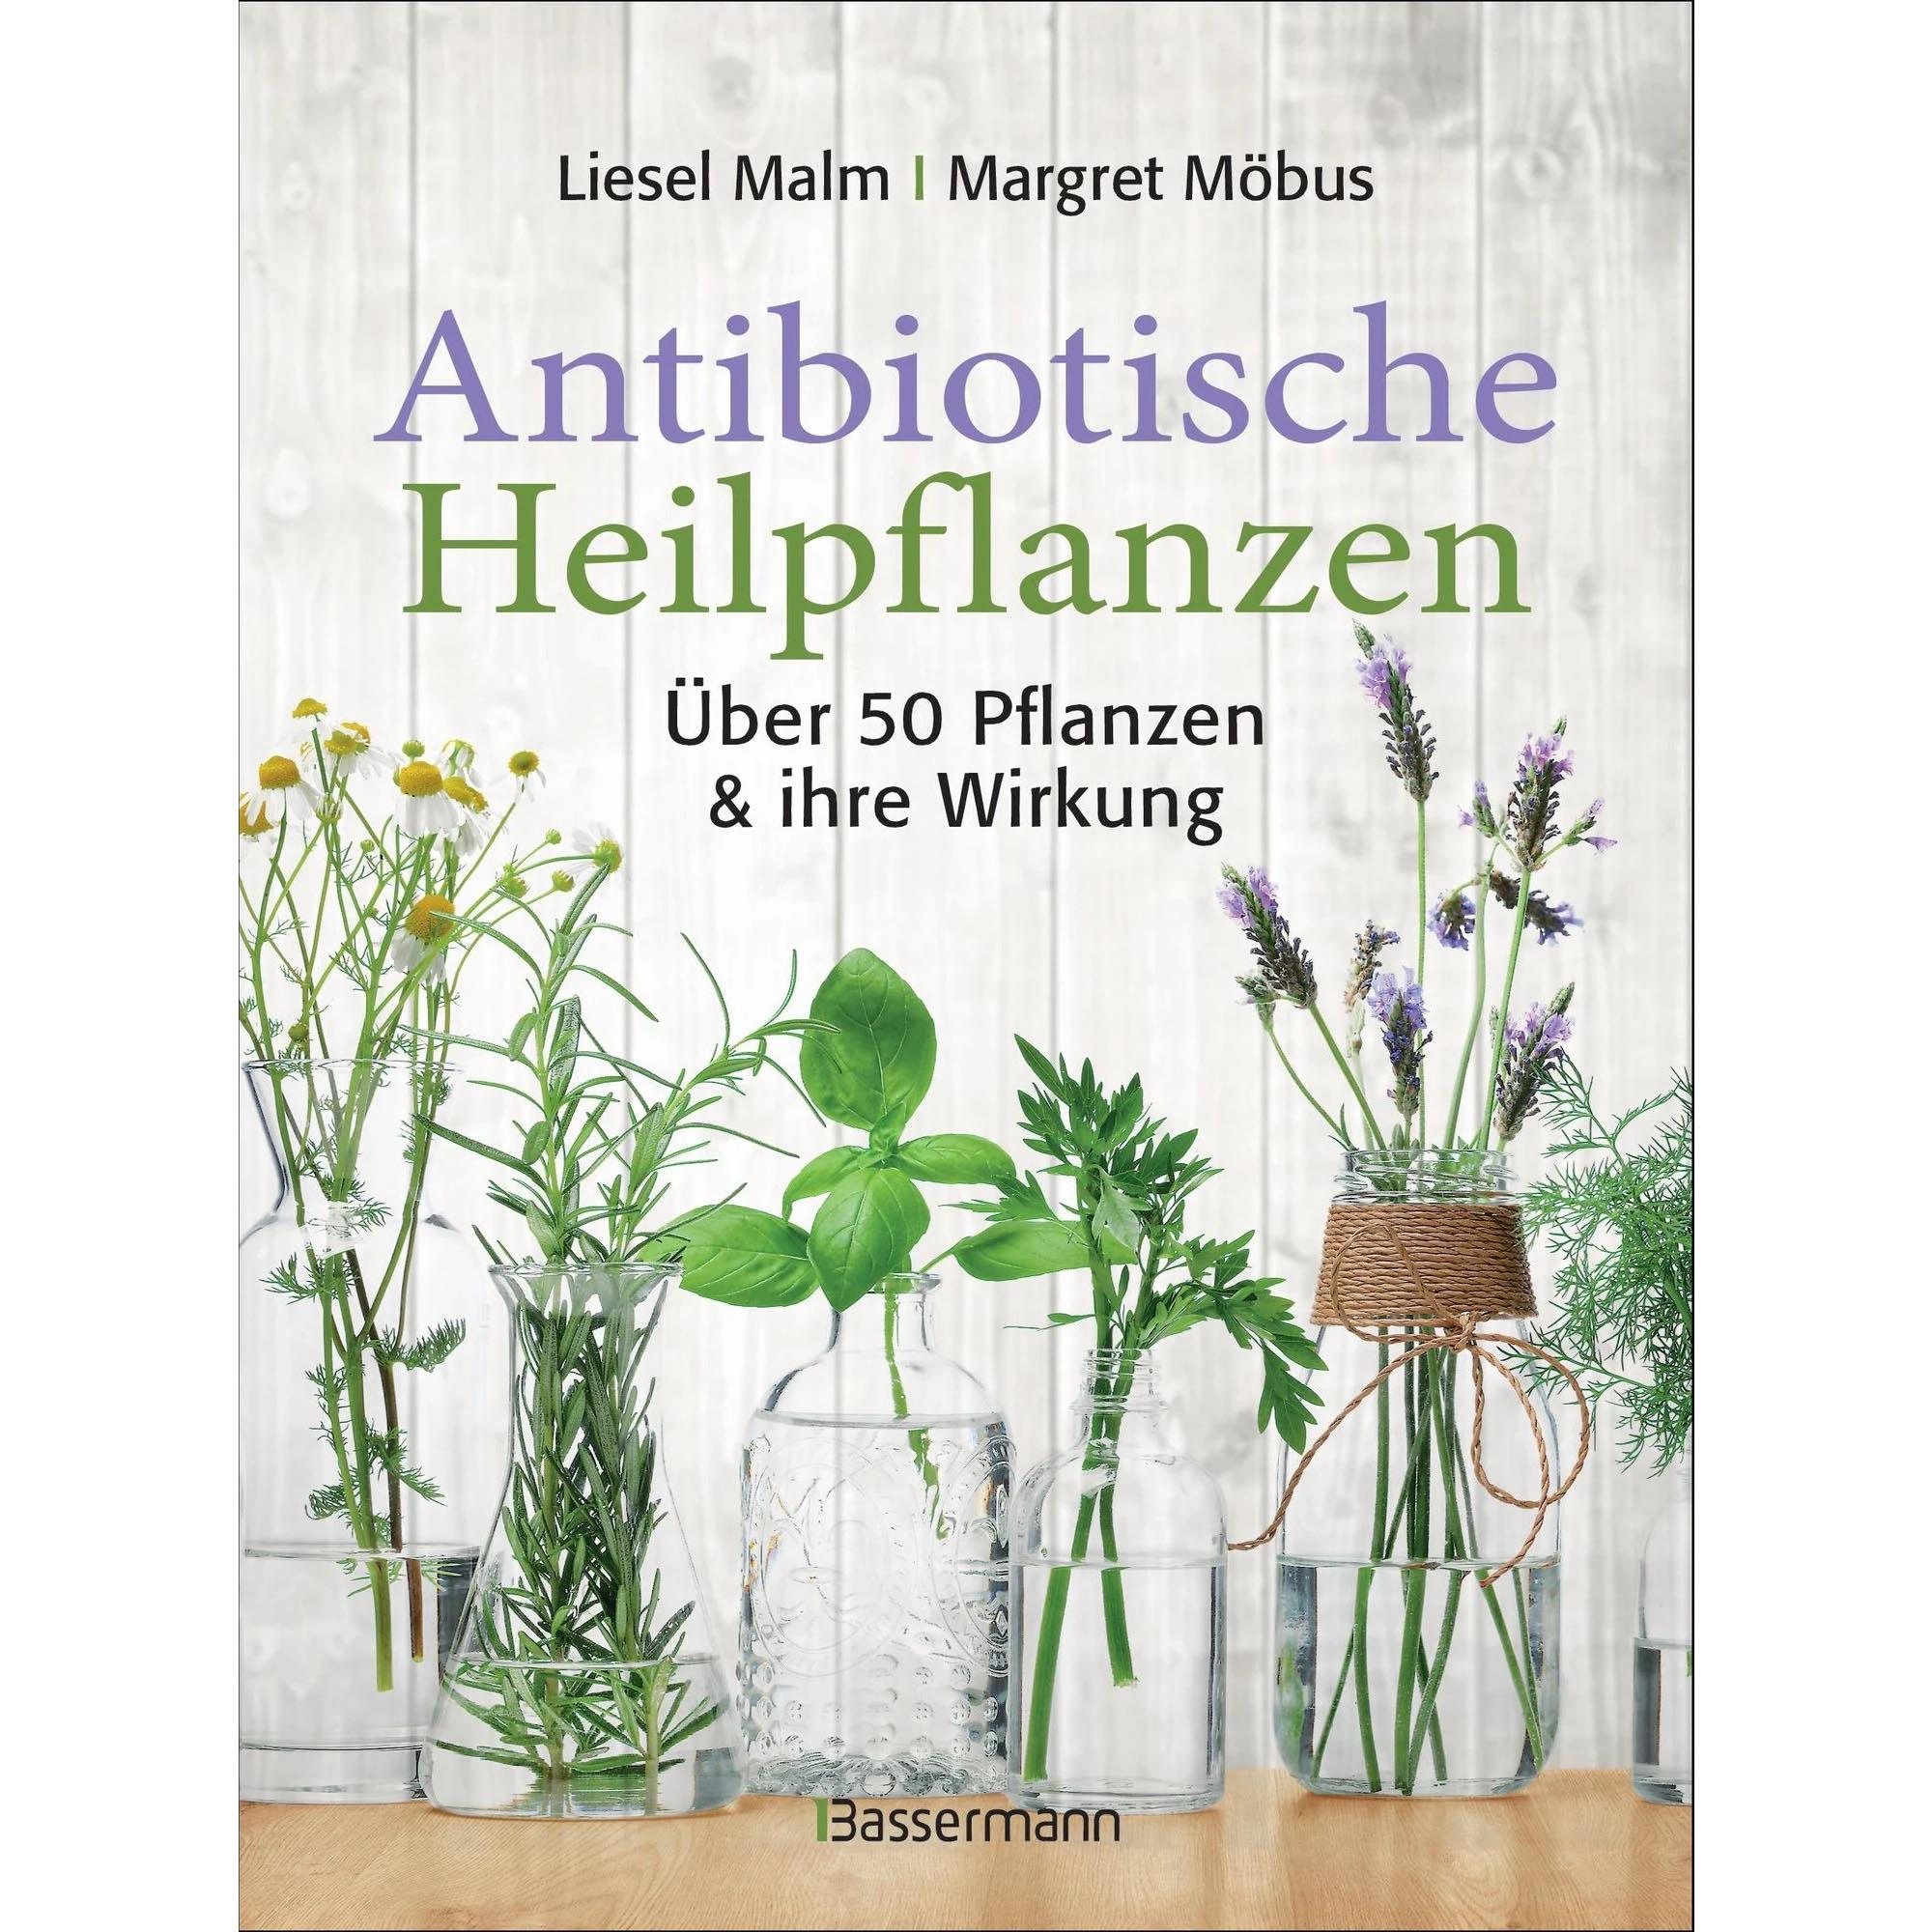 Antibiotische Heilpflanzen - Möbus, Malm